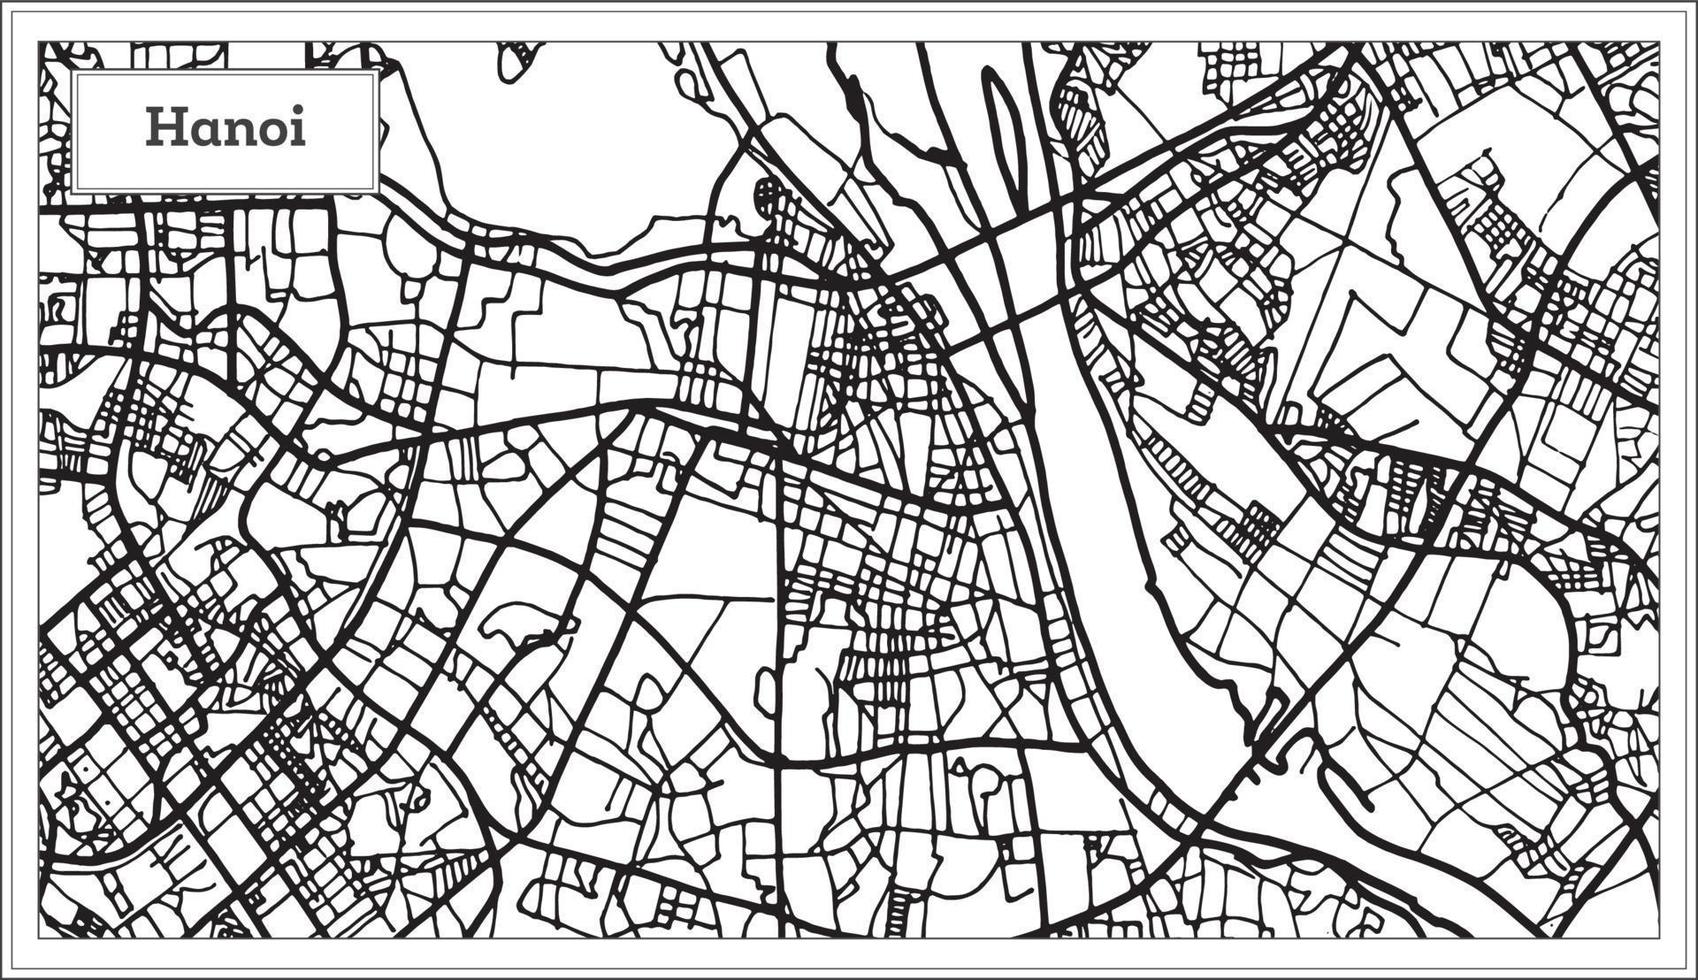 hanoi vietnam stad Karta i svart och vit Färg. vektor